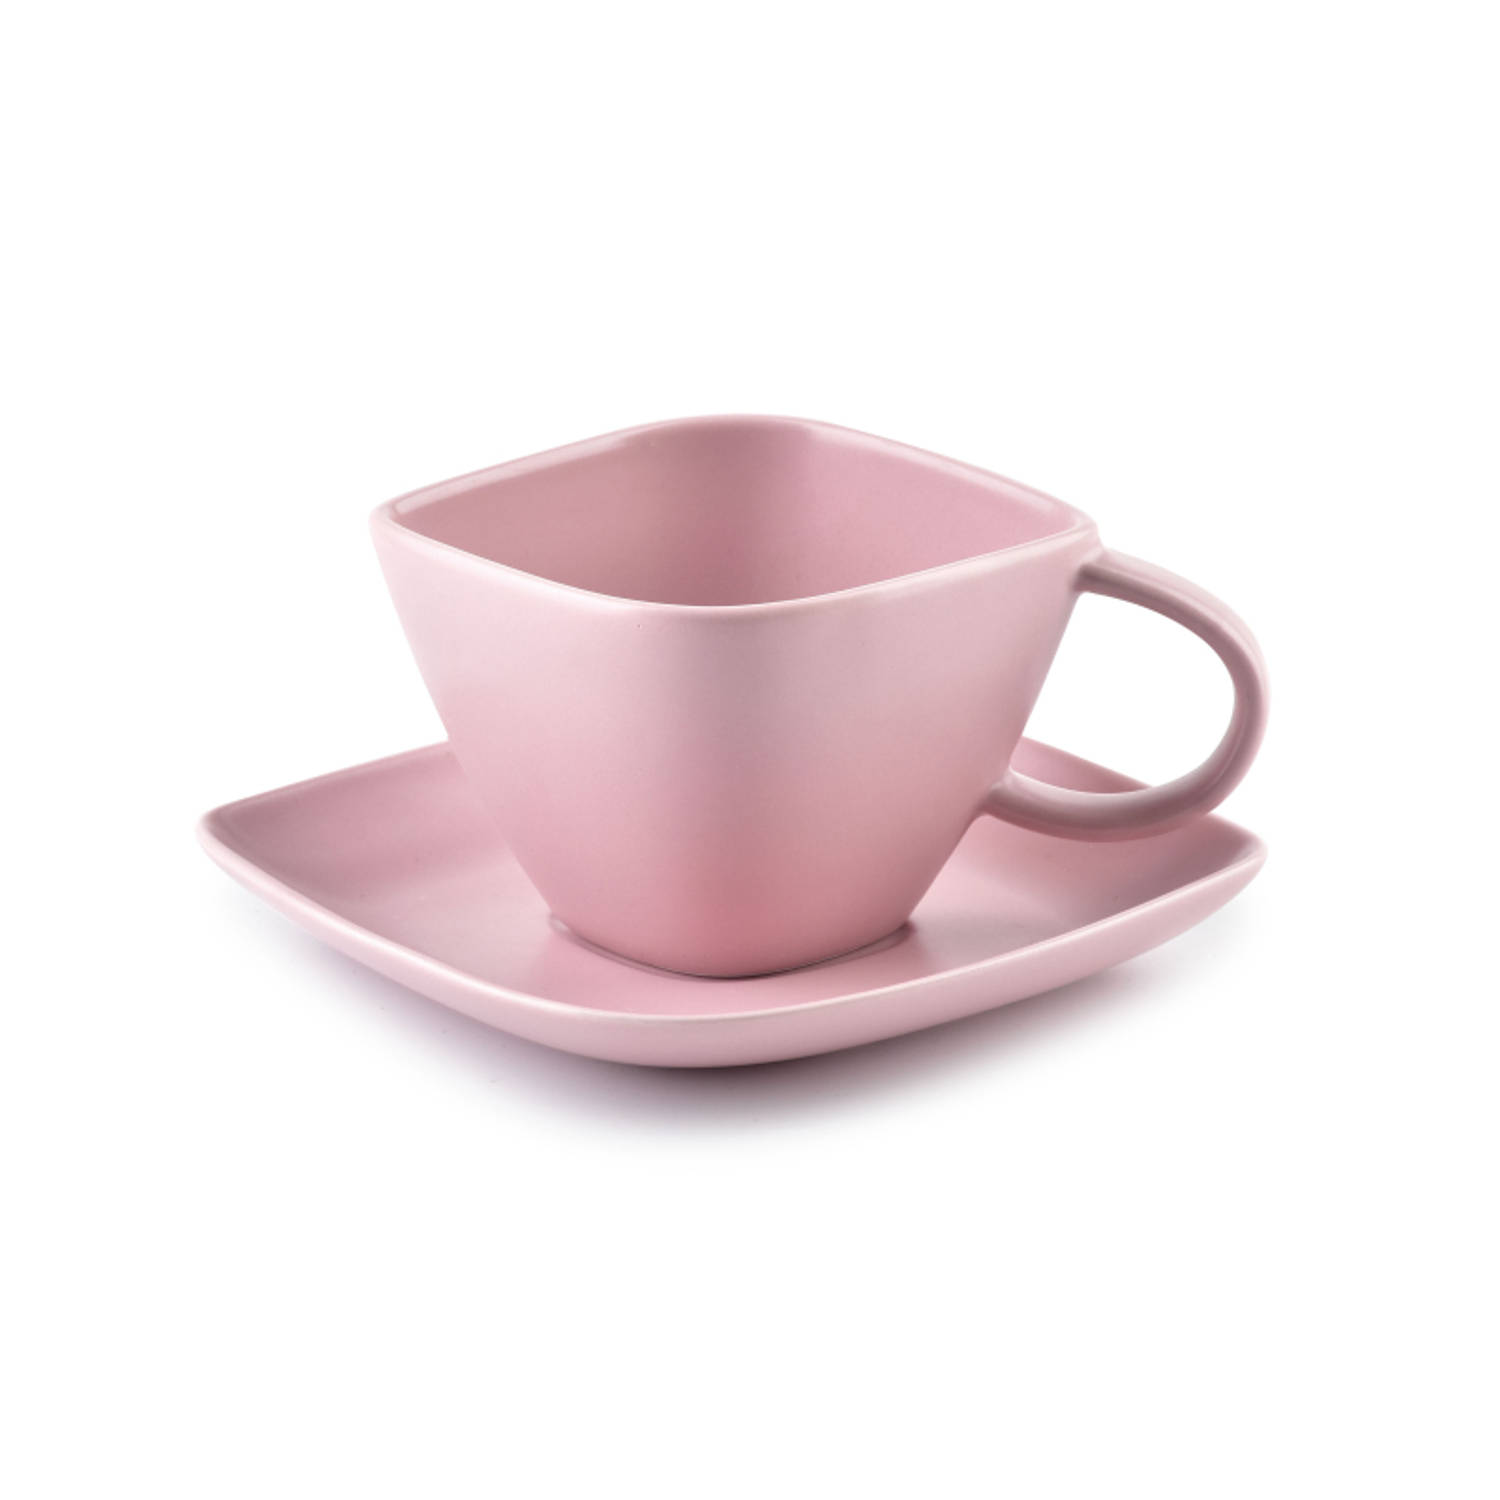 Affekdesign Happy espresso kop met schotel diamant vormig 100 ml roze - Koffiekopje of theekopje met schotel - Matte poeder roze kleur - 100ml